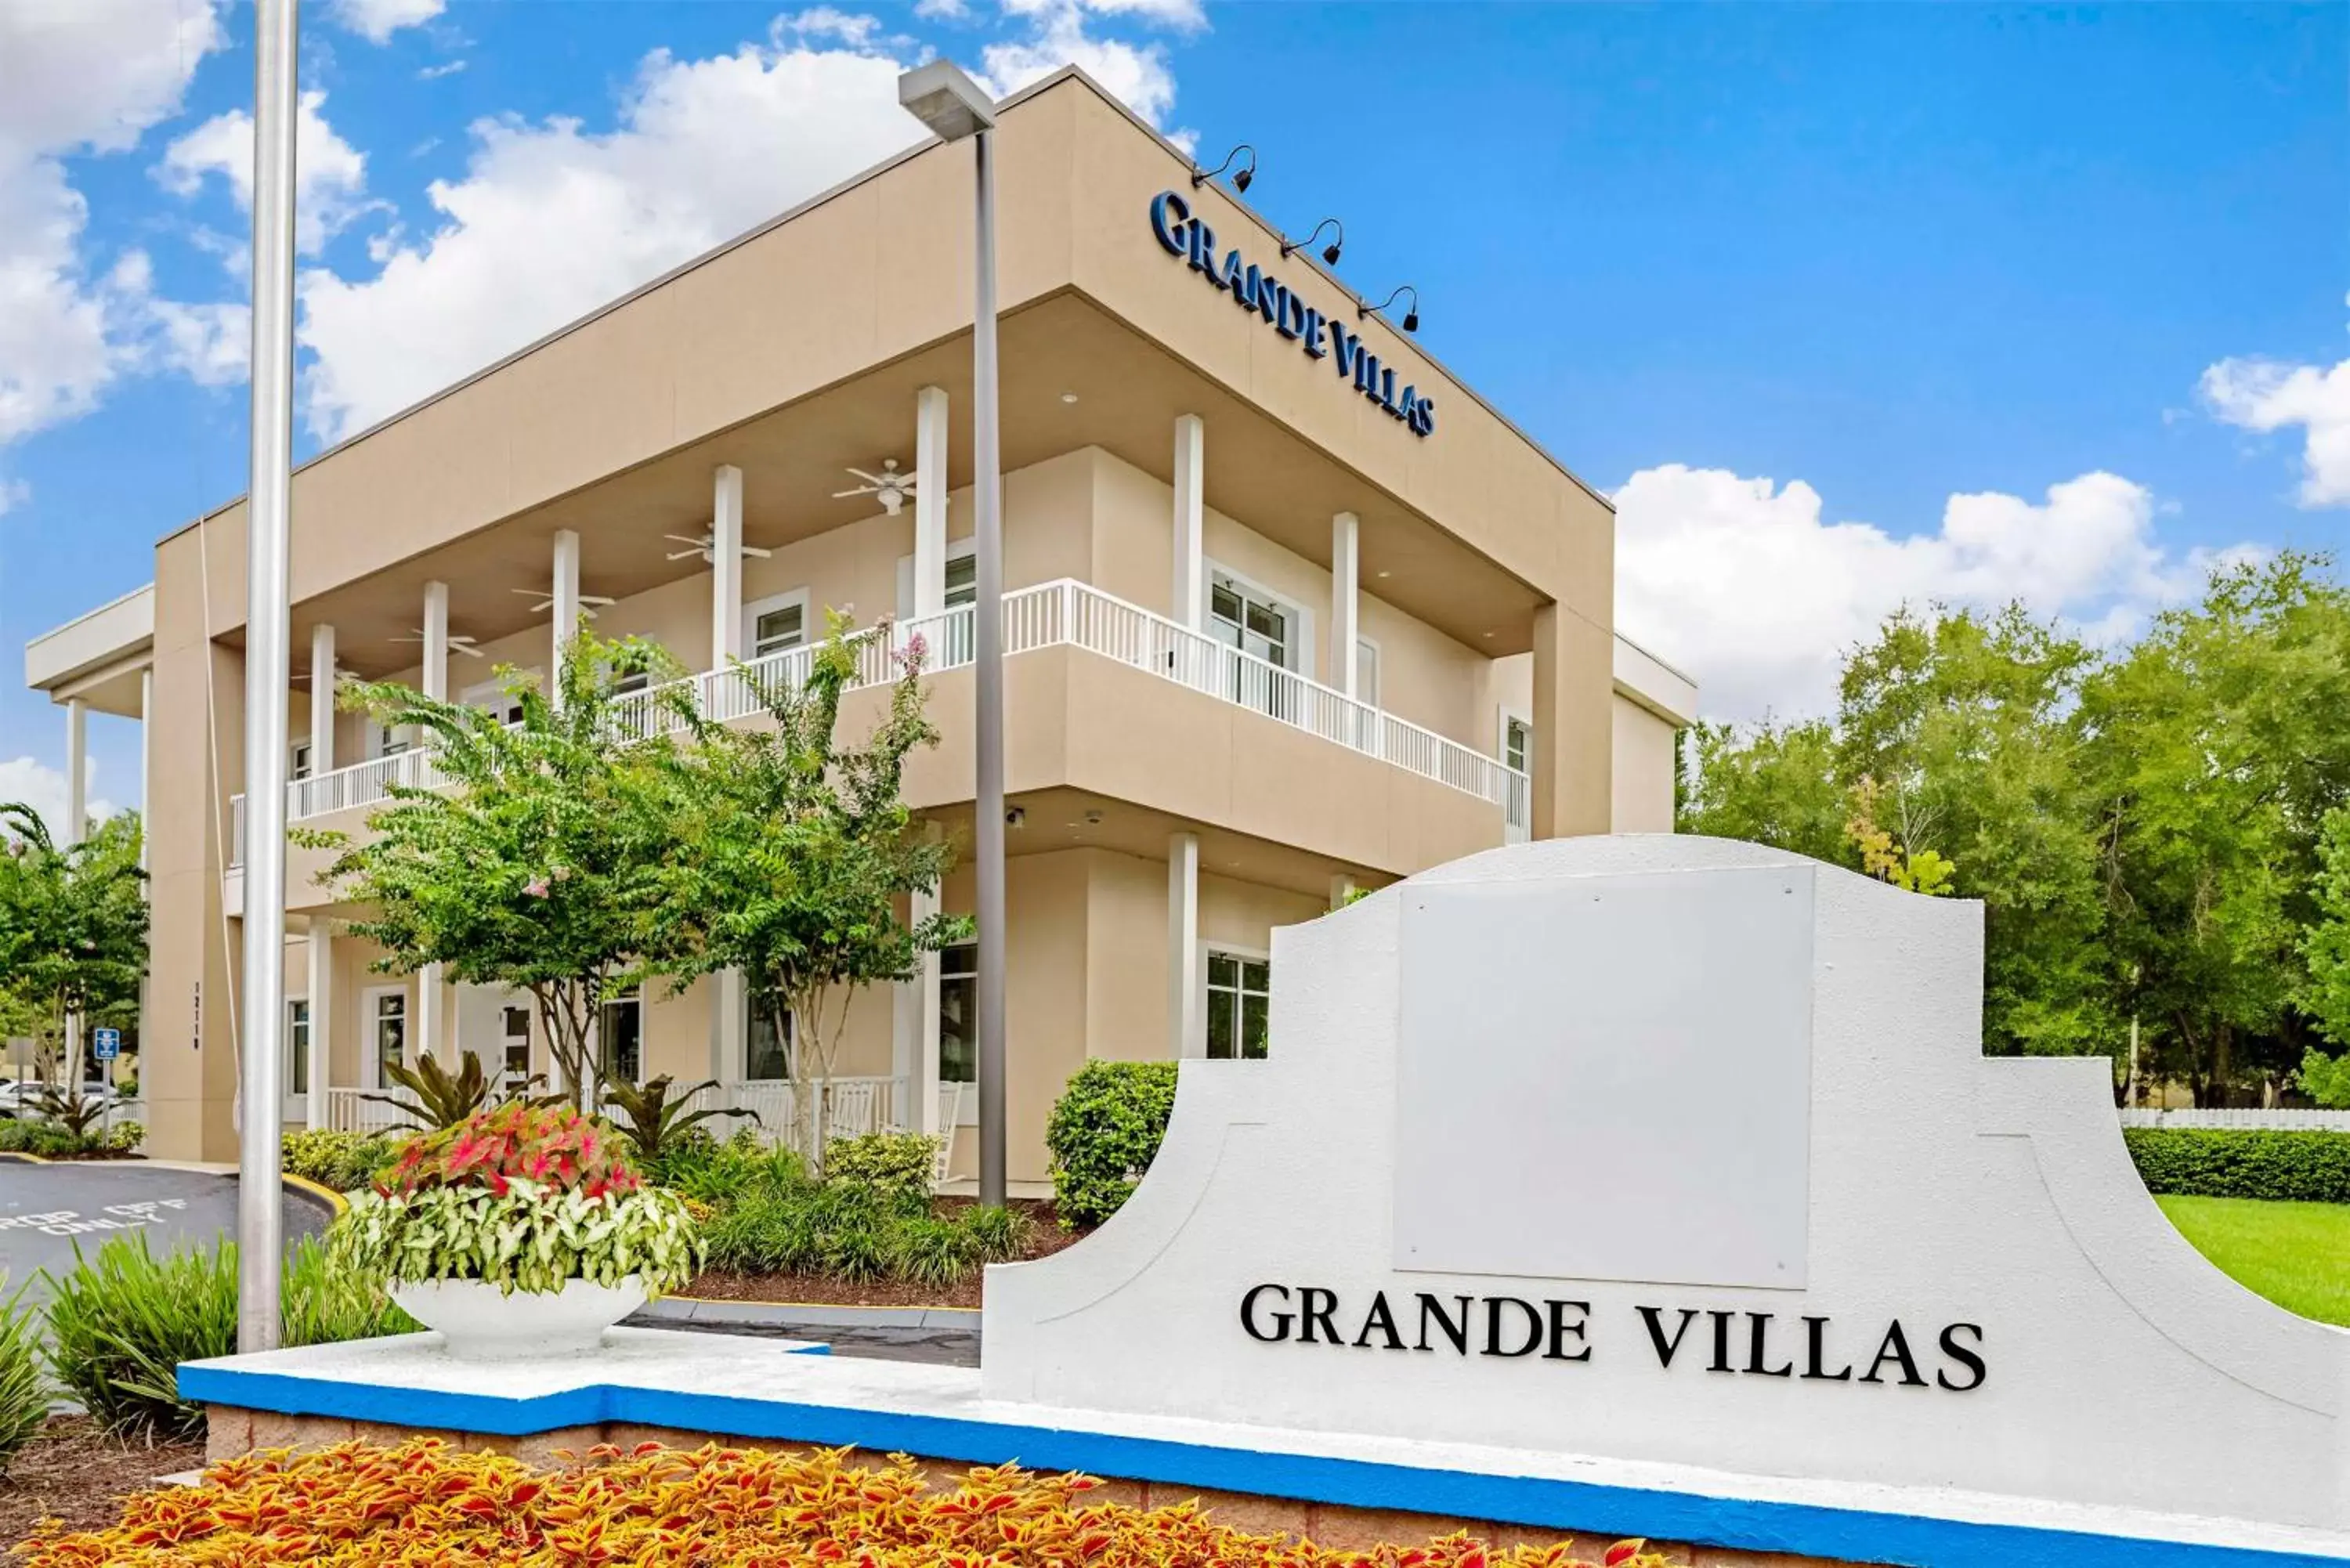 Property Building in Hilton Vacation Club Grande Villas Orlando